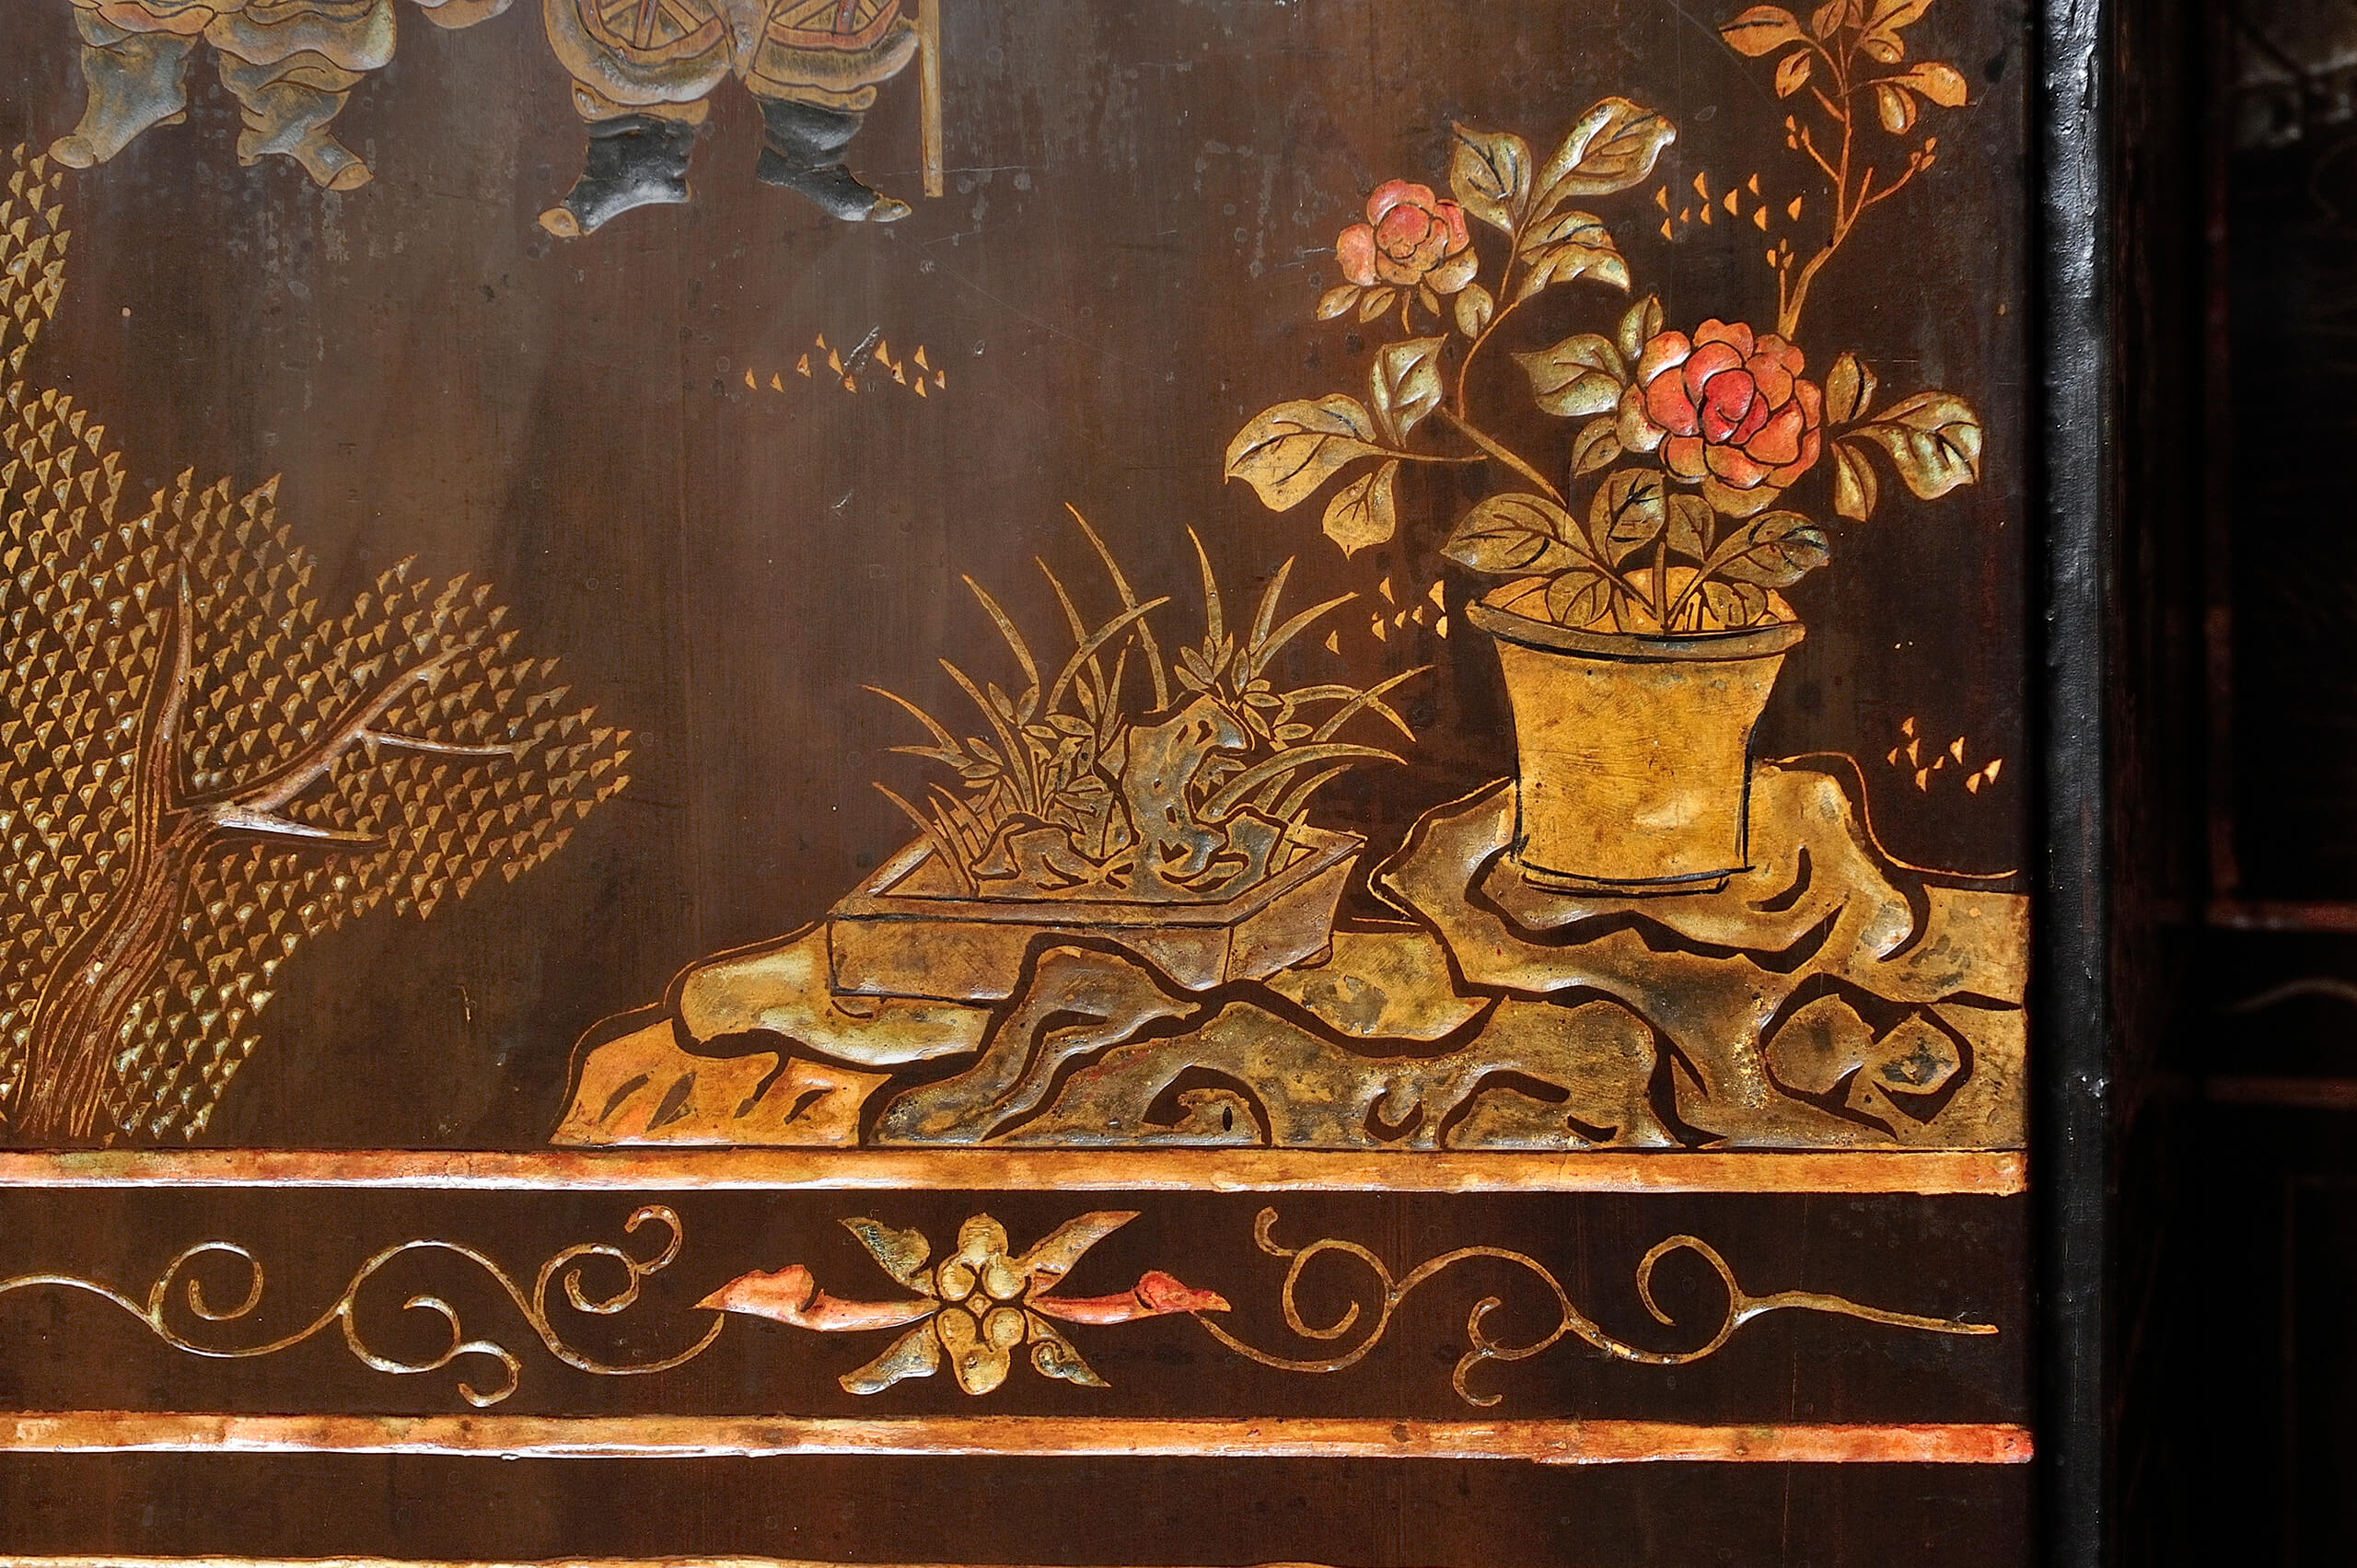 Biombo de ocho hojas de madera laqueada con escenas palaciegas | Salas de Arte Virreinal y Siglo XIX | Museo Amparo, Puebla